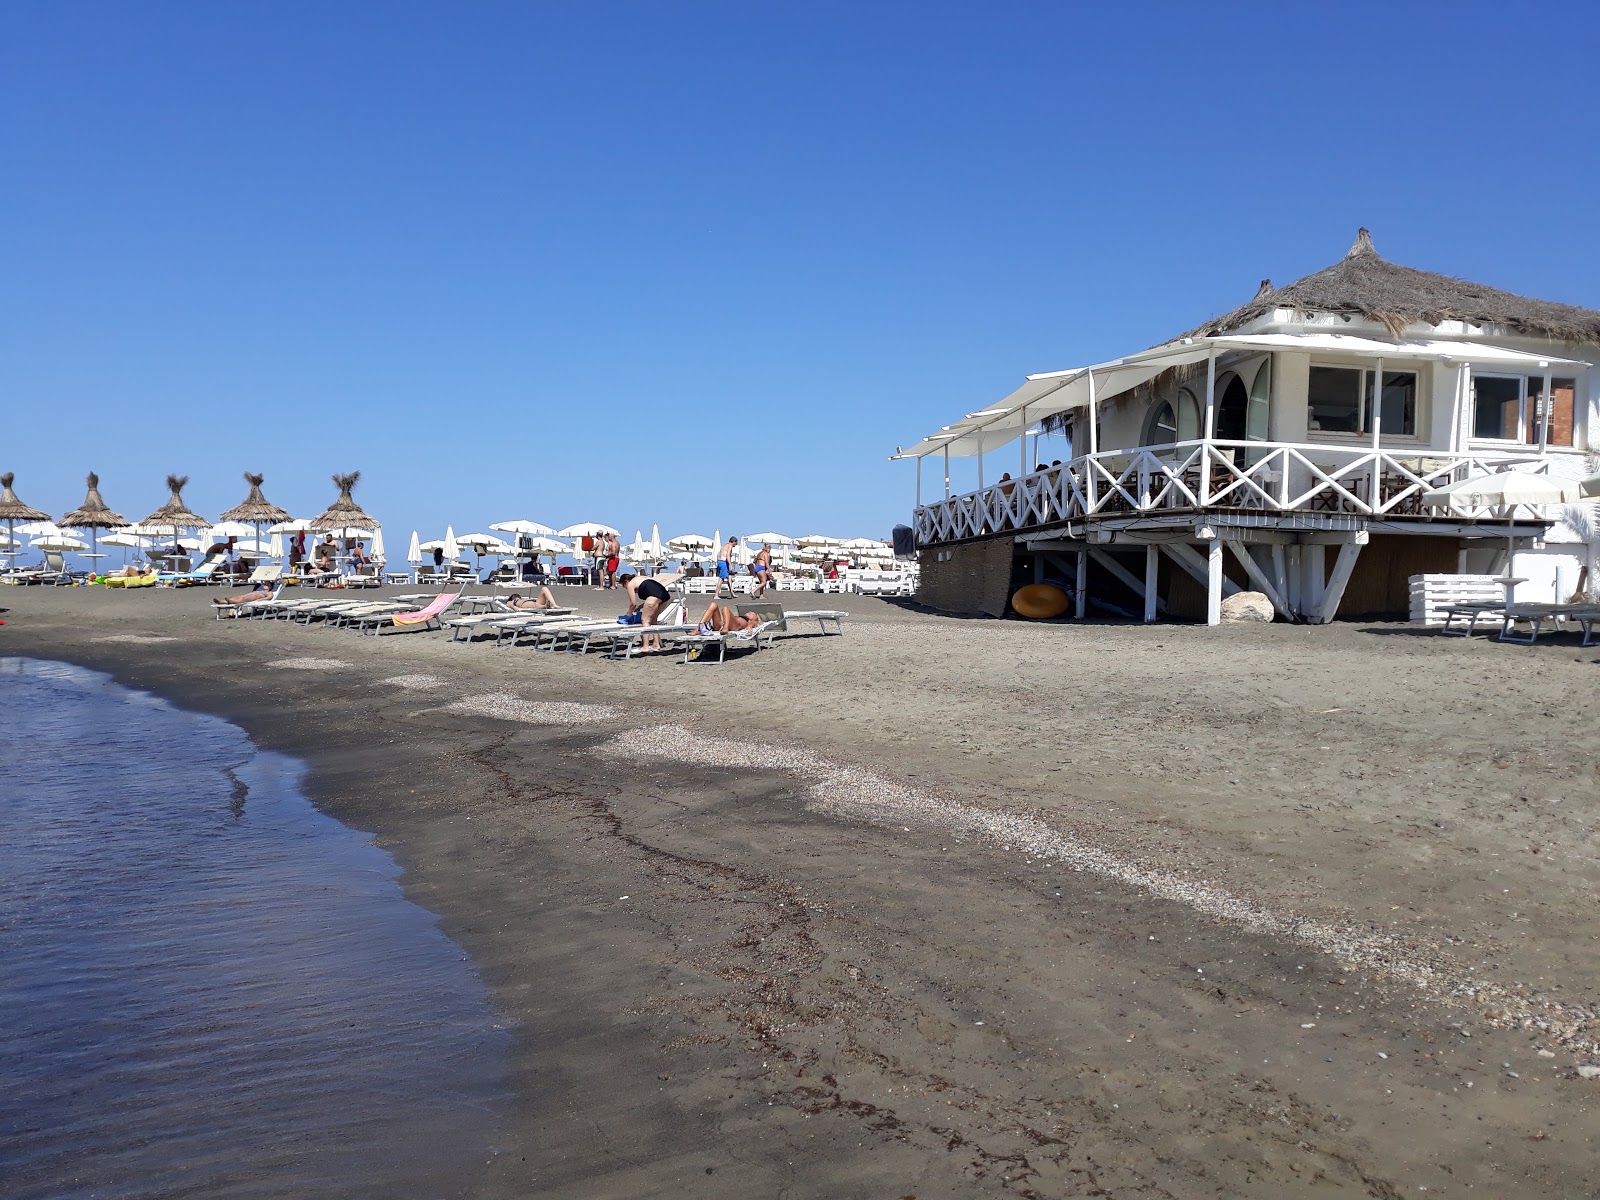 Foto av Ladispoli beach med hög nivå av renlighet